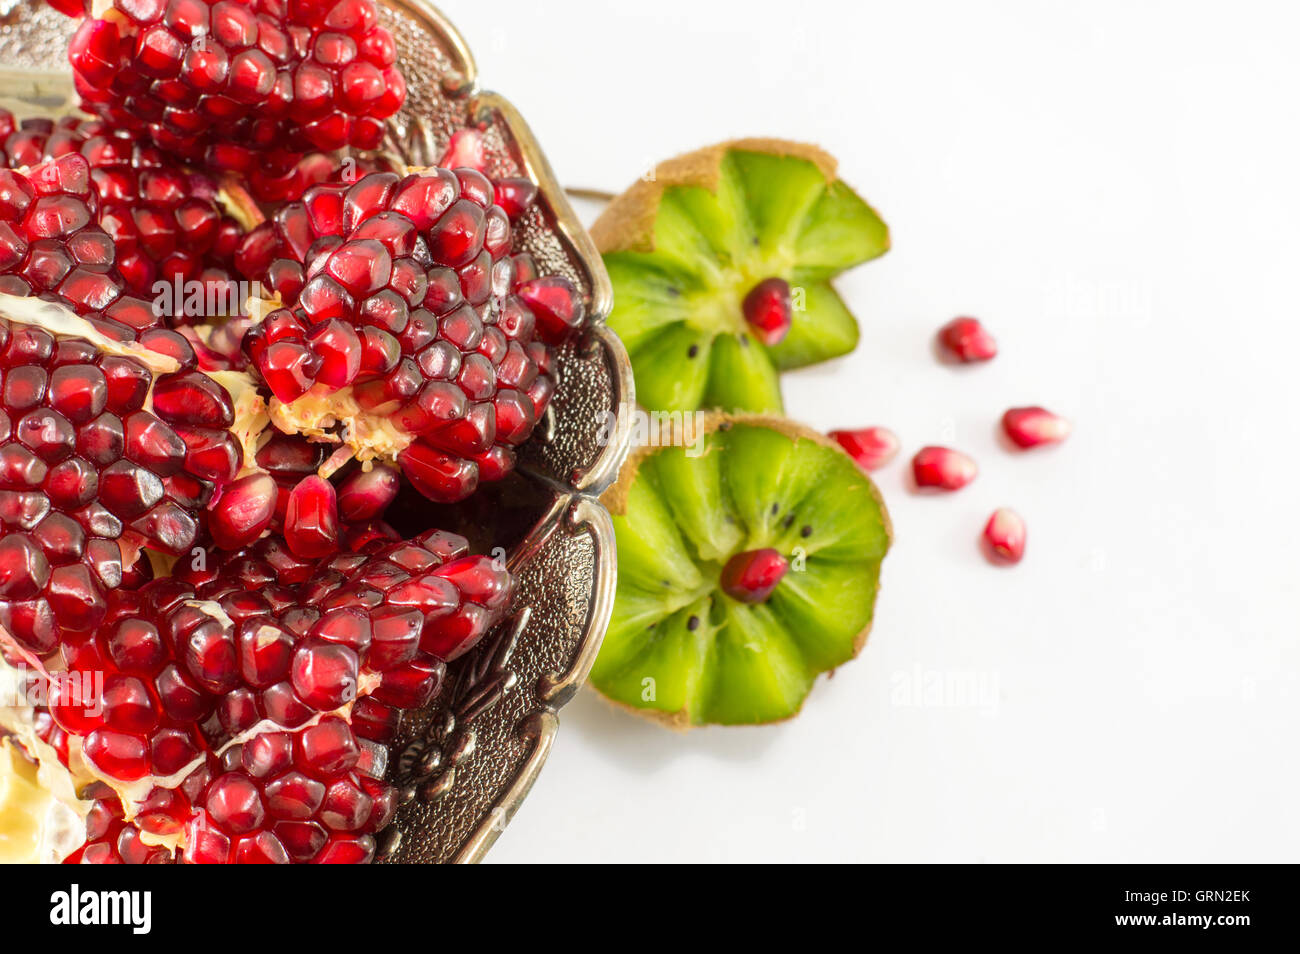 Juicy whole pomegranate and kiwi on white background Stock Photo